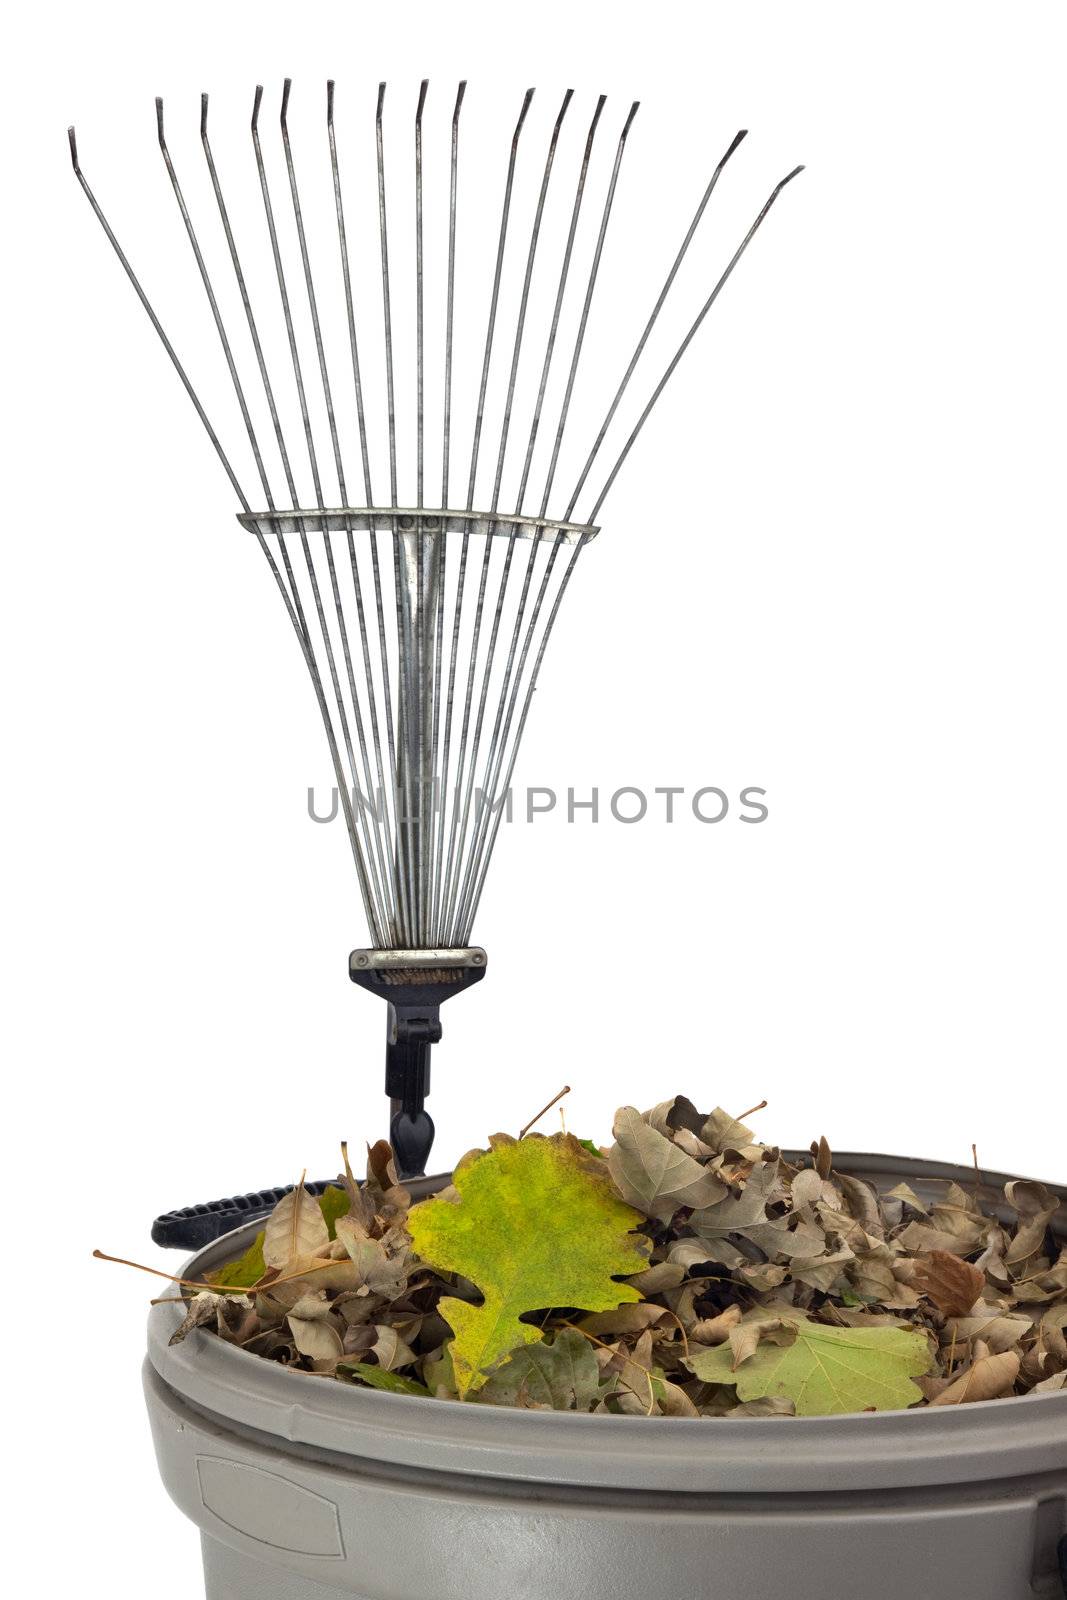 trash bin, dry leaves and rake by PixelsAway